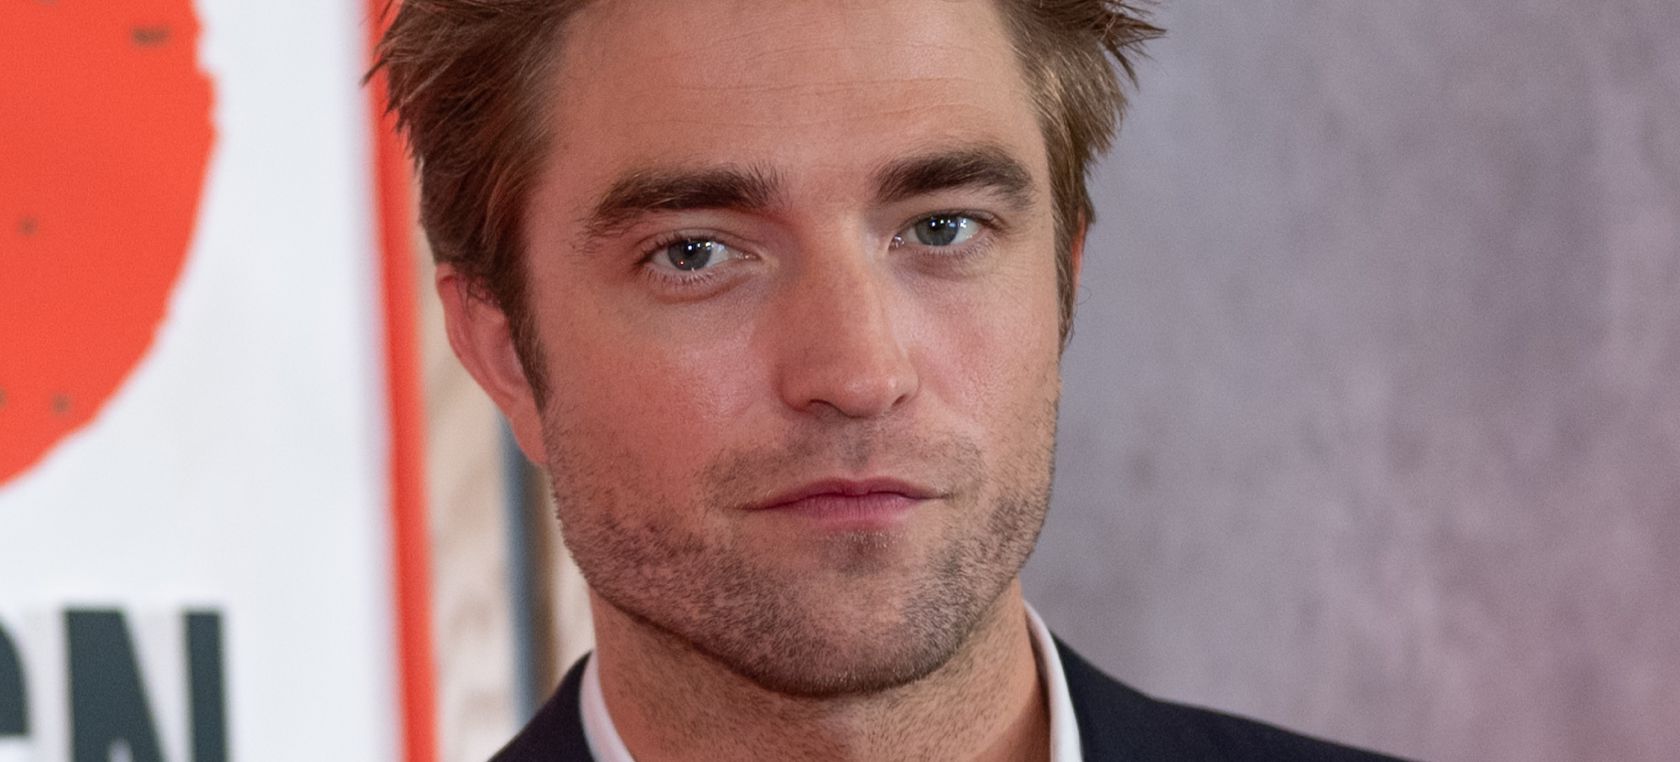 El Batman de Robert Pattinson se basa en los 70 y Nirvana, según su  director: “Es una especie de drogadicto” | Cine y Televisión | LOS40